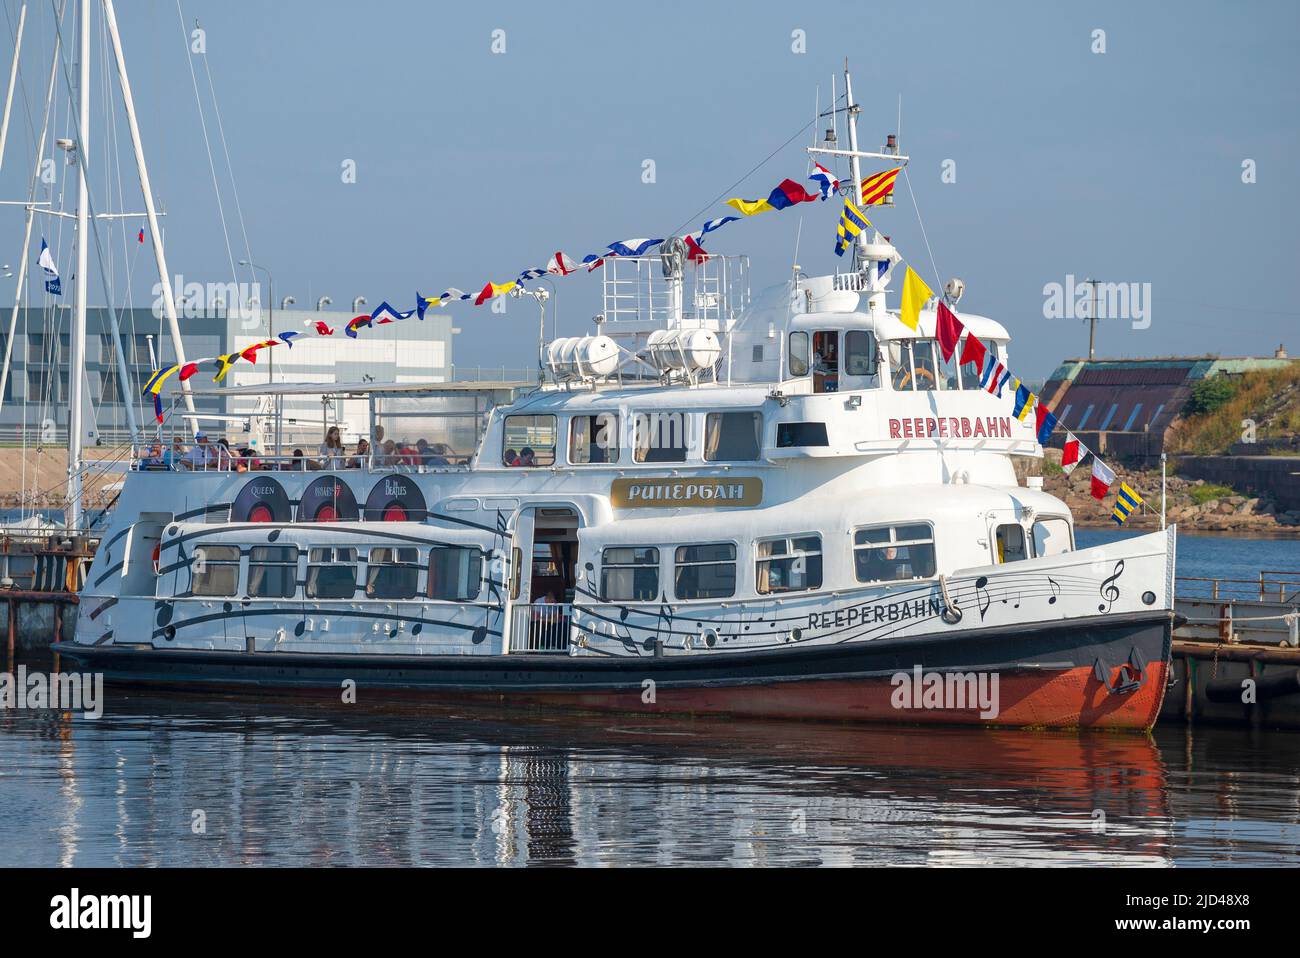 KRONSHTADT, RUSSIE - 28 JUILLET 2019 : le célèbre bateau à moteur 'Reeperbahn', sur lequel les Beatles, les Rolling Stones et la Reine se sont produits, en gros plan sur un soleil Banque D'Images